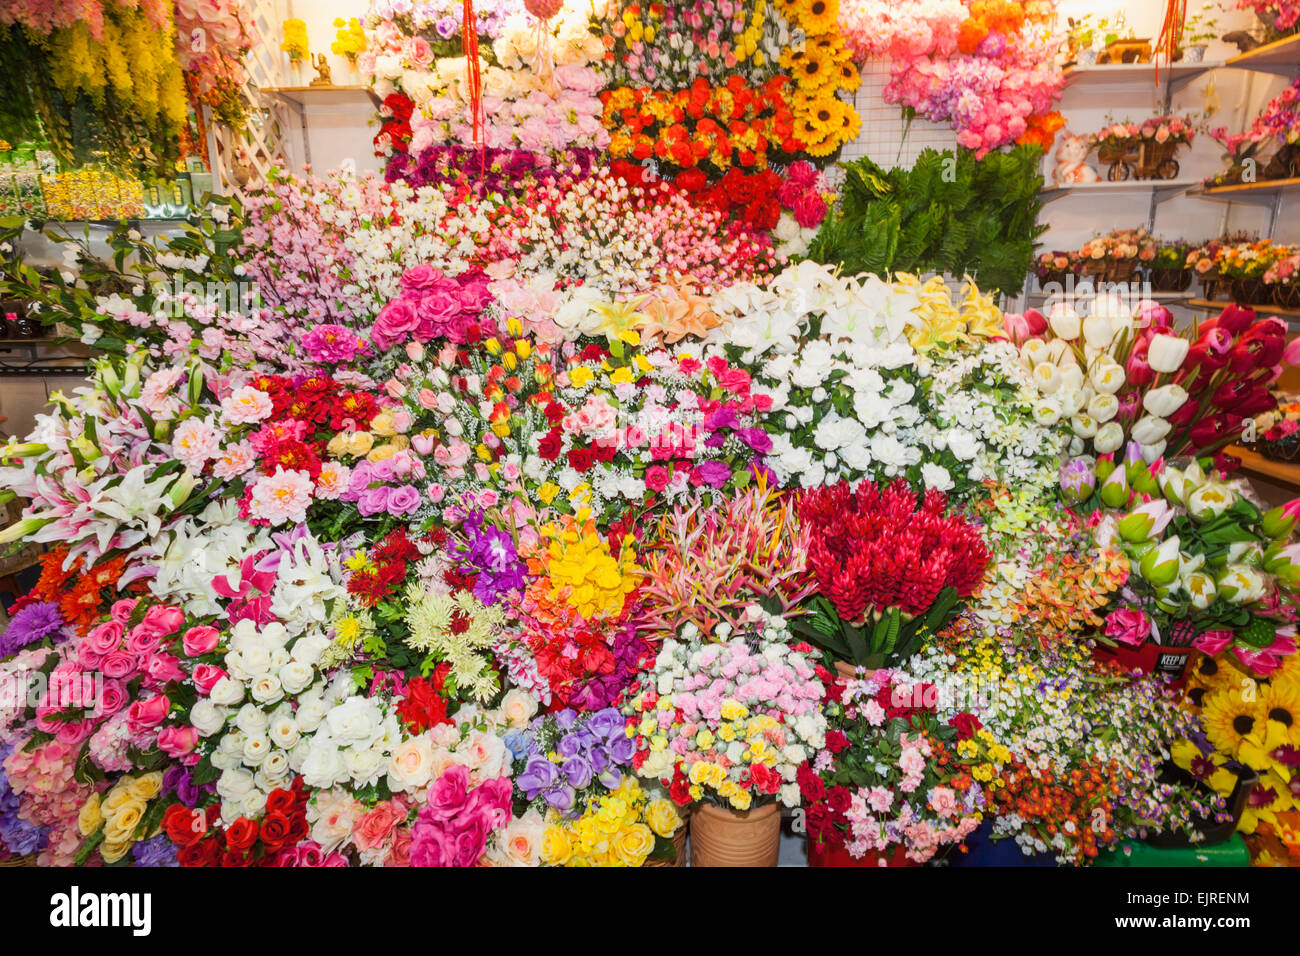 La Thaïlande, Chiang Mai, marché Warorot, magasin de fleurs en plastique Afficher Banque D'Images